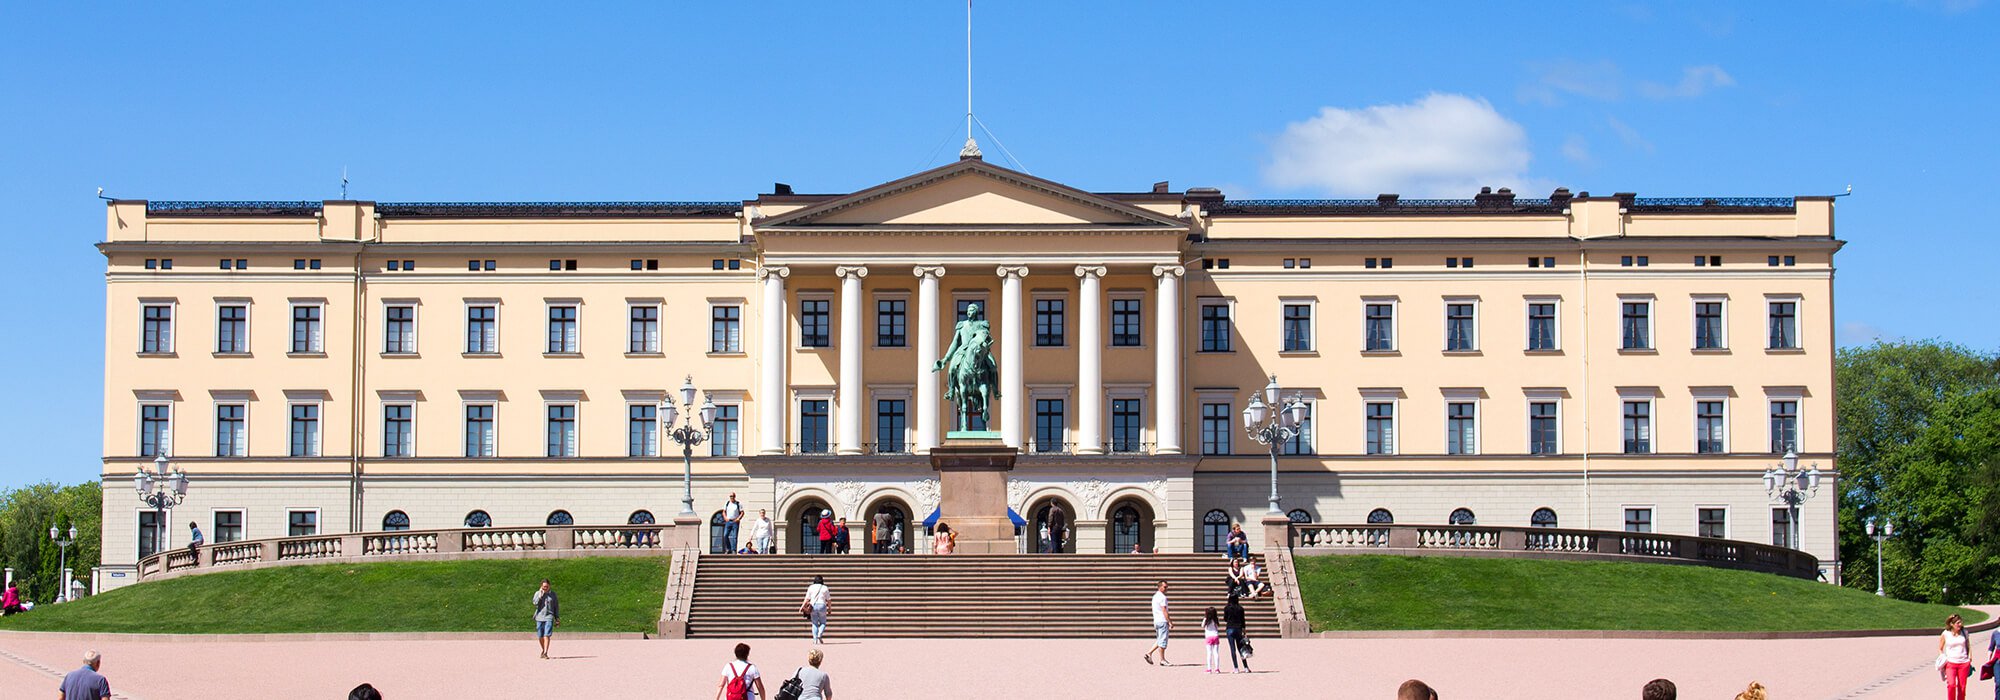 Workation in Norwegen, Oslo Innenstadt mit dem Osloer Schloss und Schlossplatz